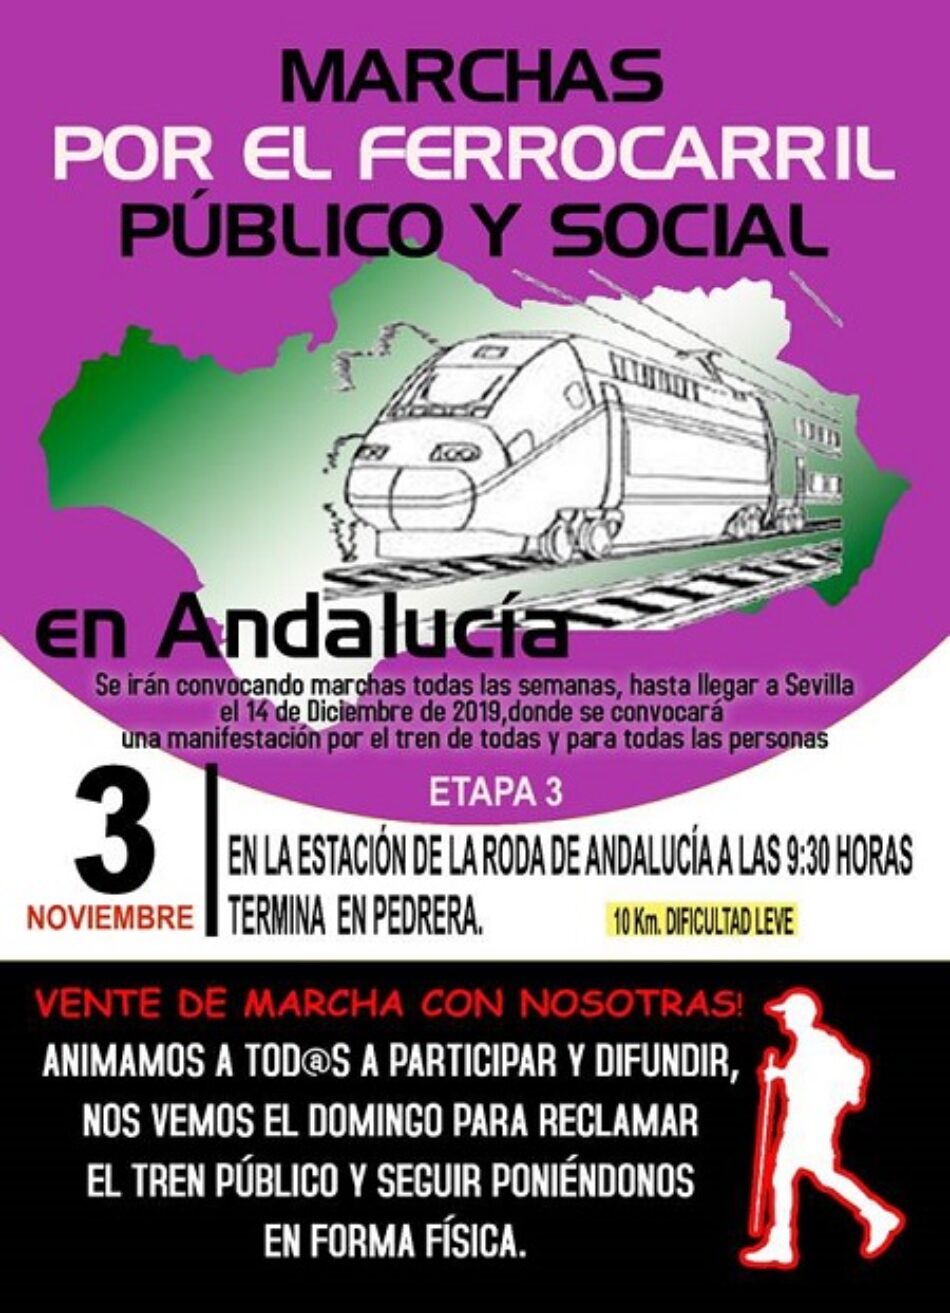 El 3 de noviembre, tercera etapa de las marchas en defensa del ferrocarril público y social andaluz